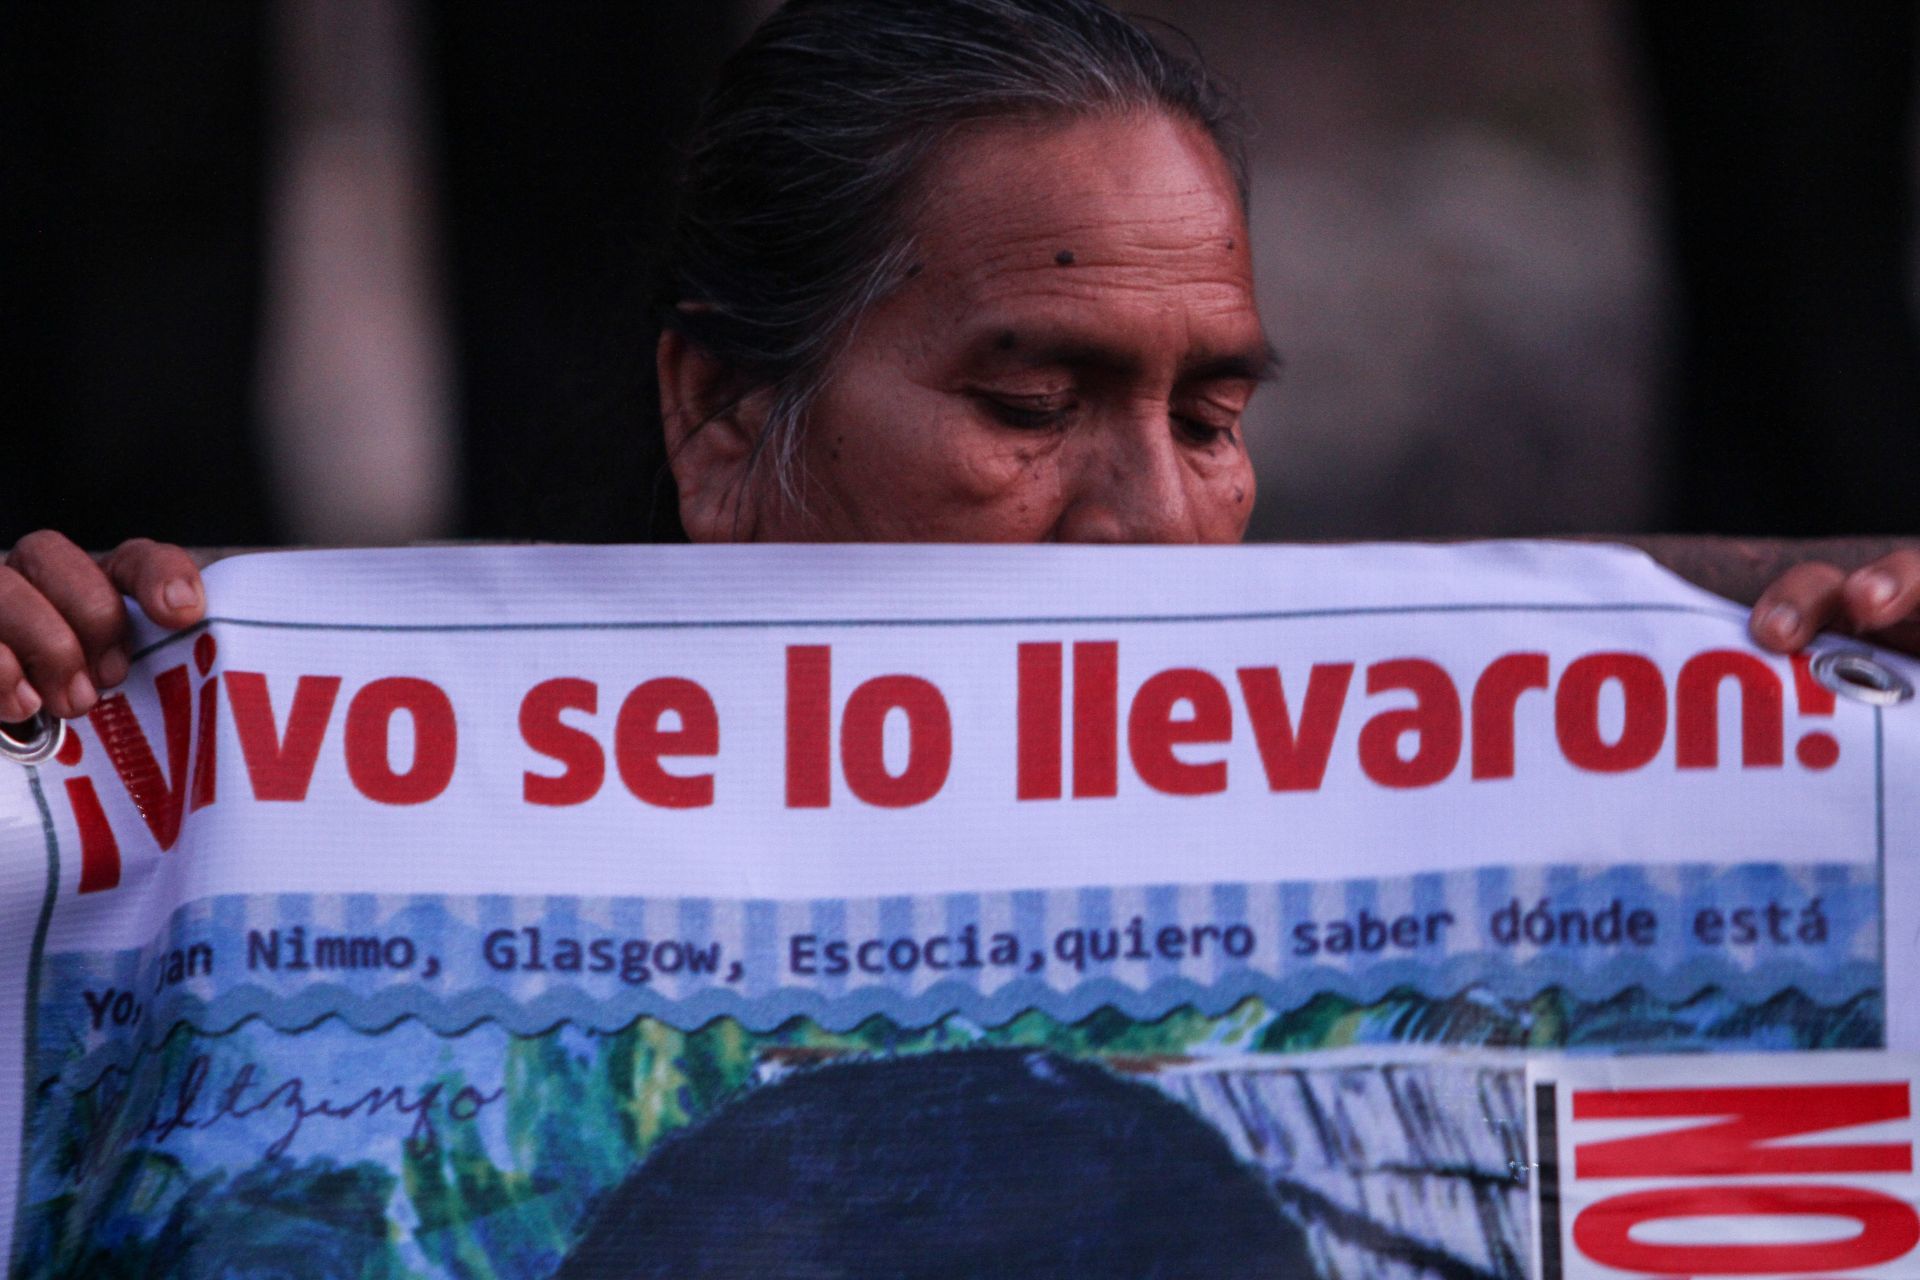 Colectivo de búsqueda en Guanajuato denuncia amenazas